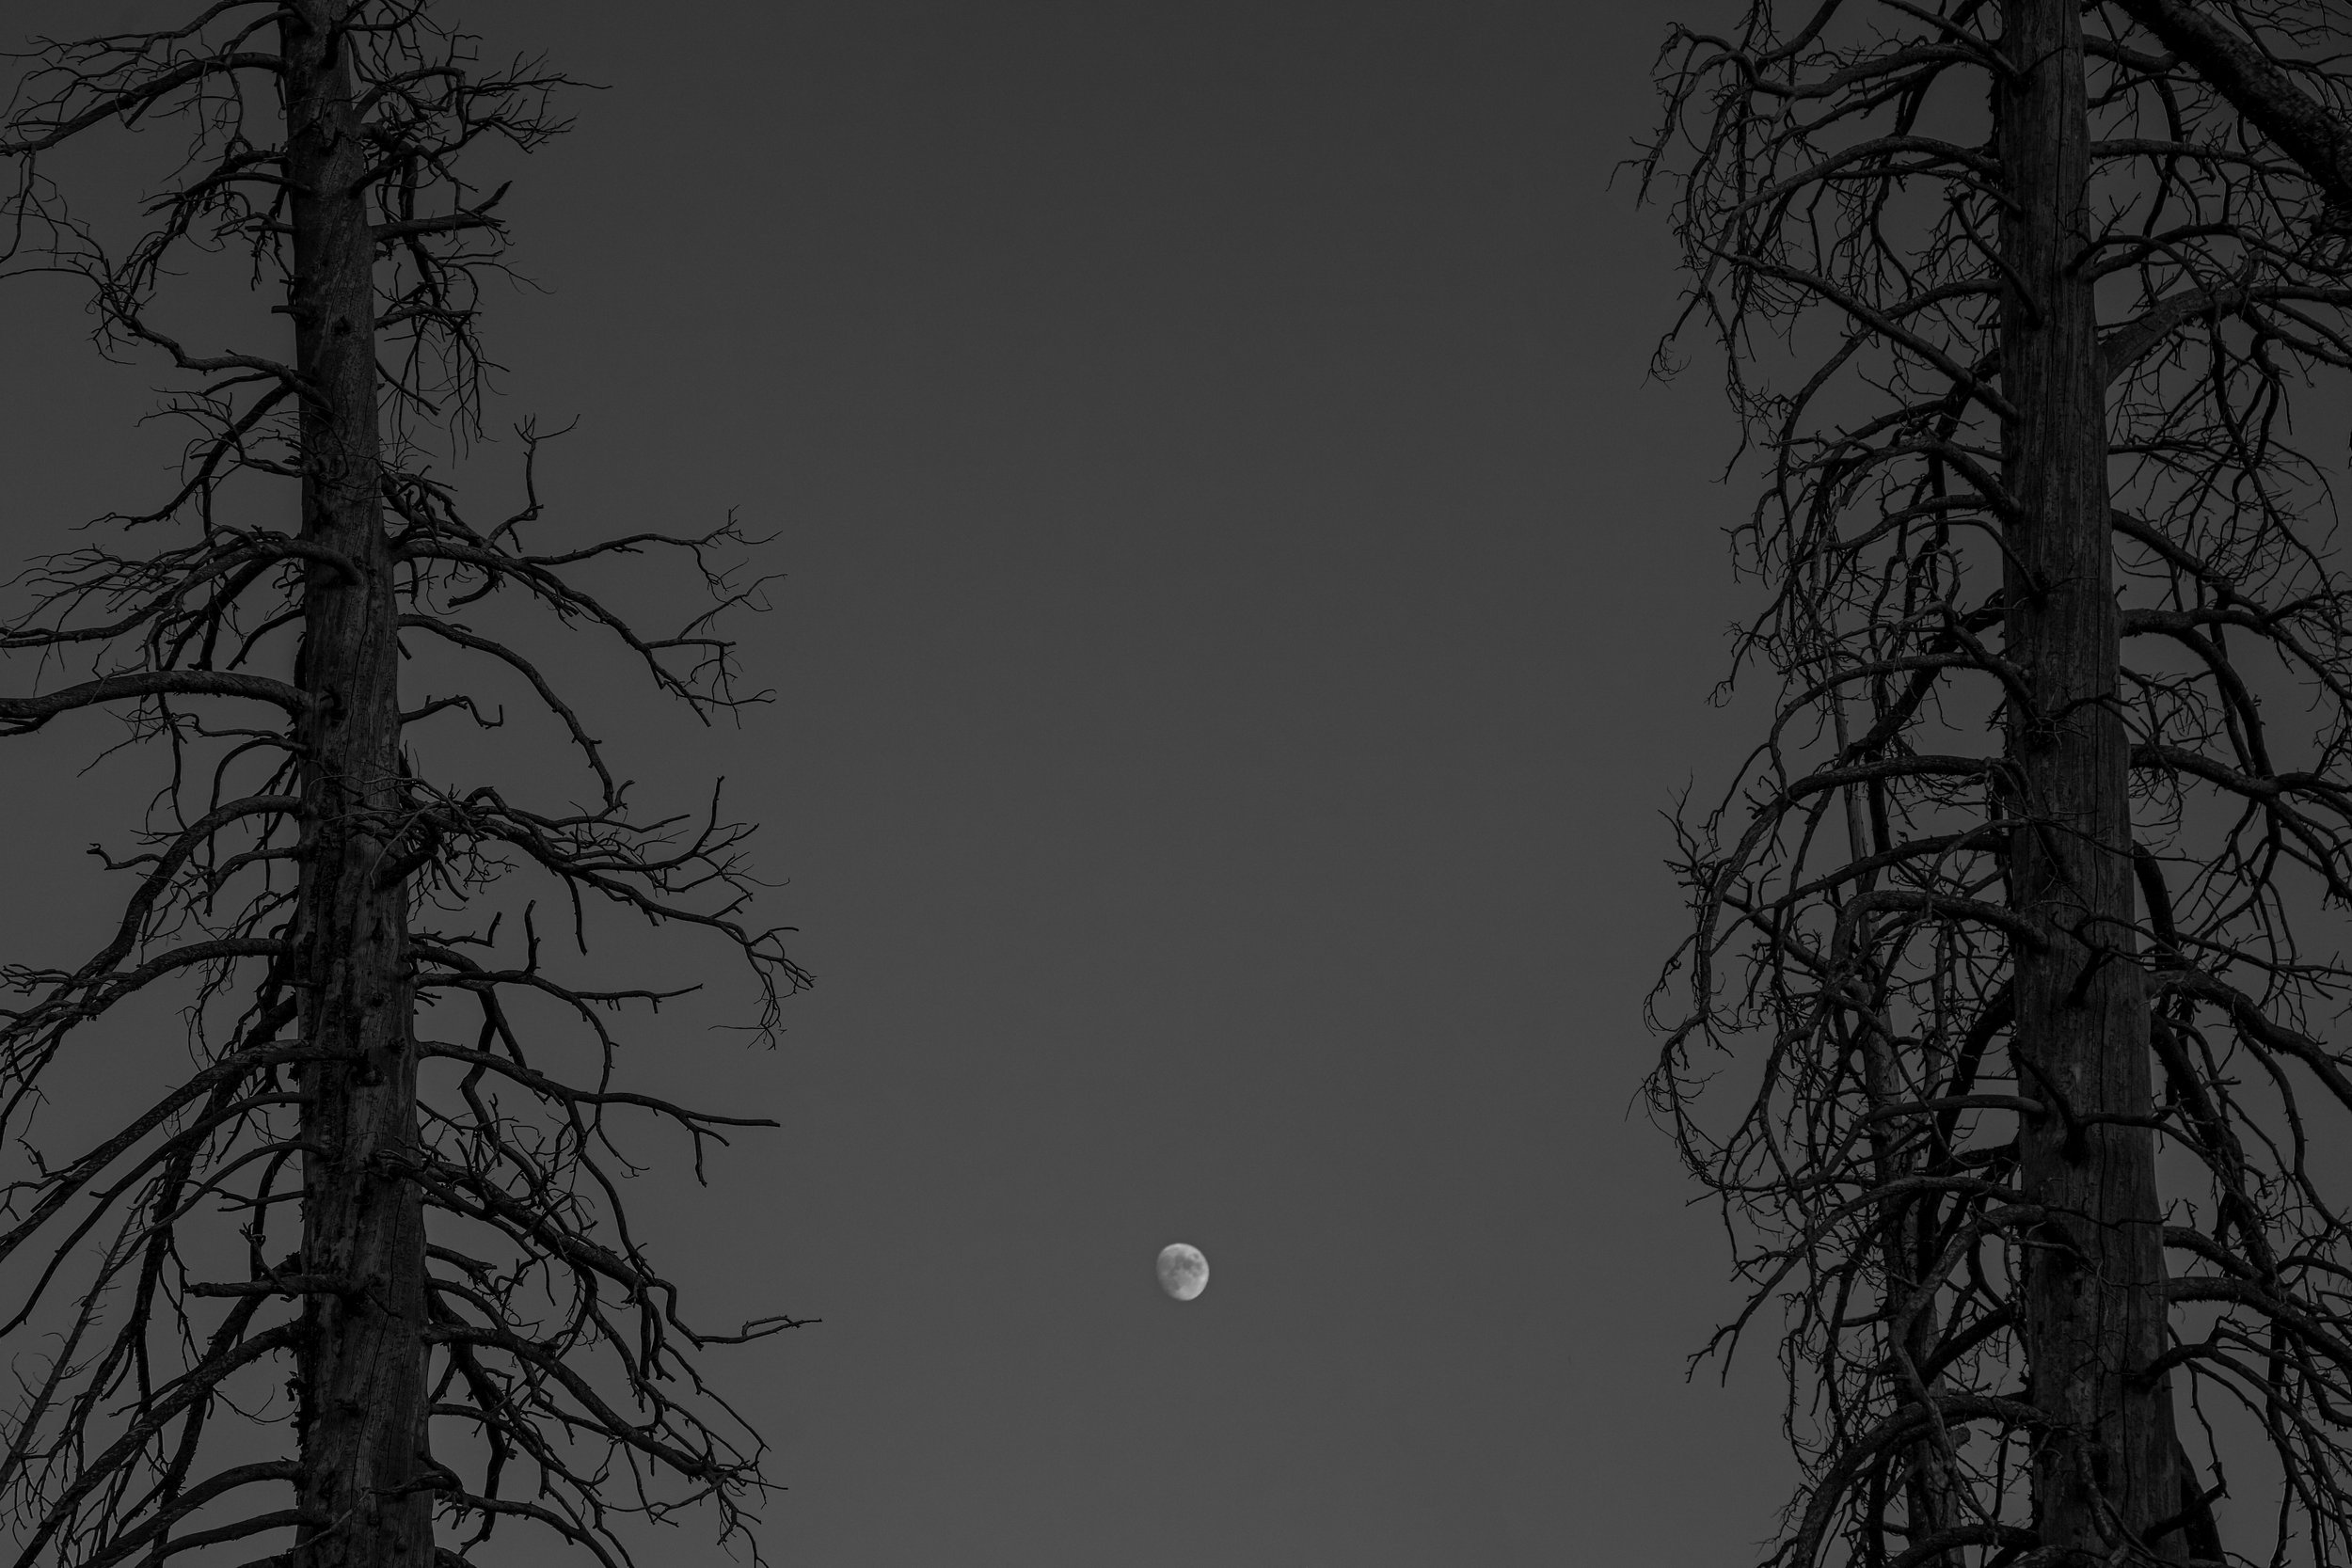 MoonTrees.jpg